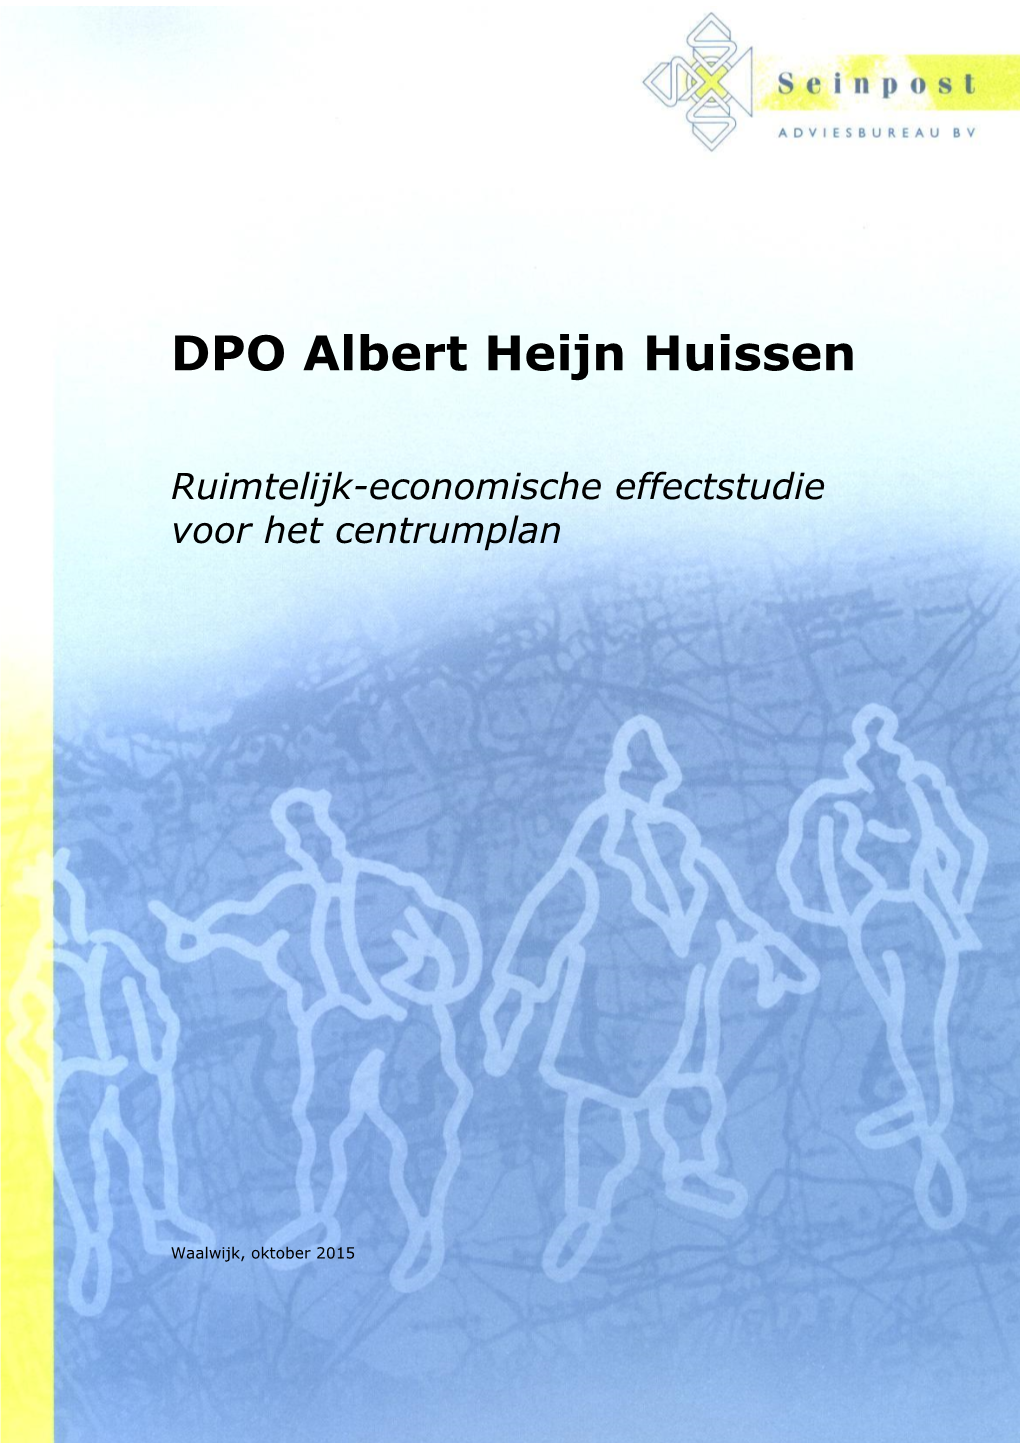 DPO Albert Heijn Huissen